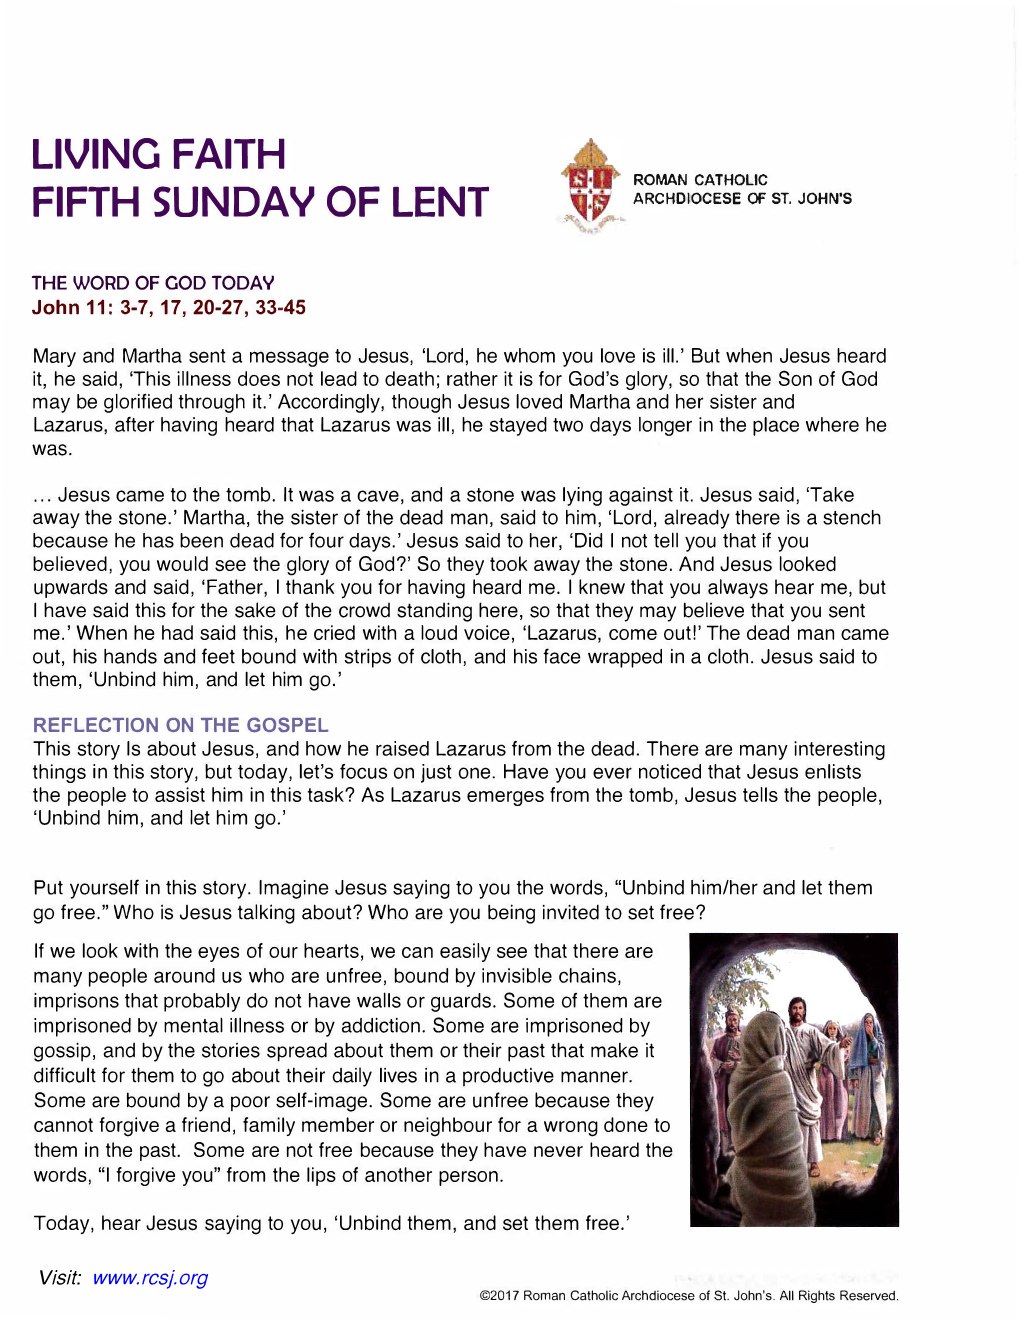 Living Faith Fifth Sunday of Lent